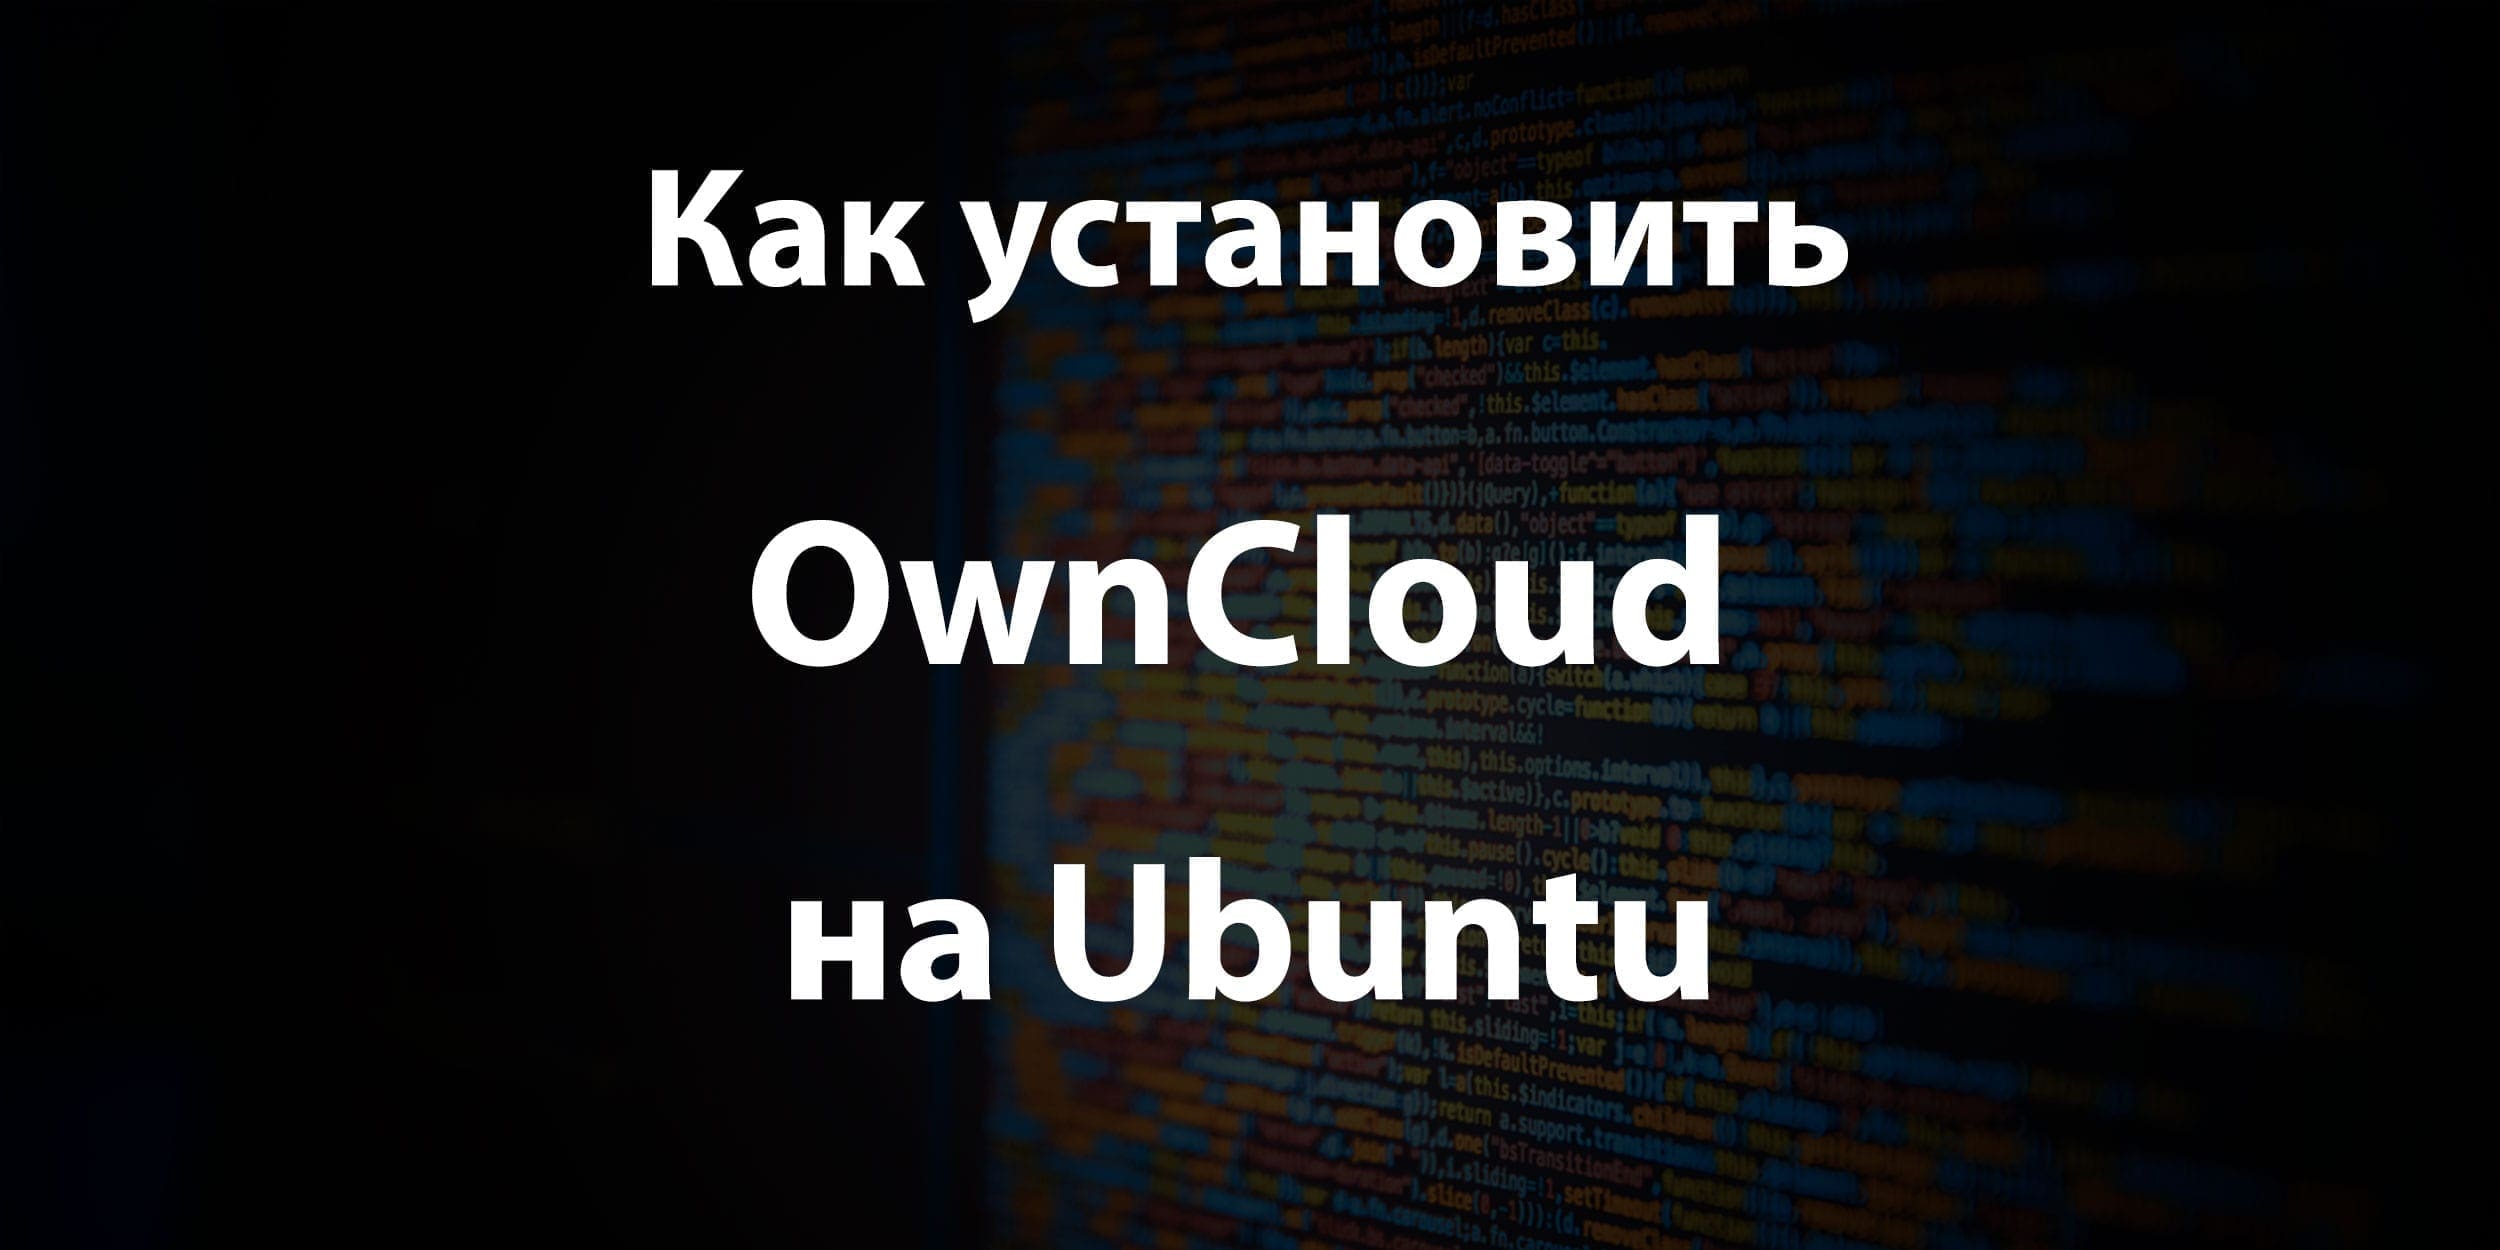 Как установить OwnCloud на Ubuntu?